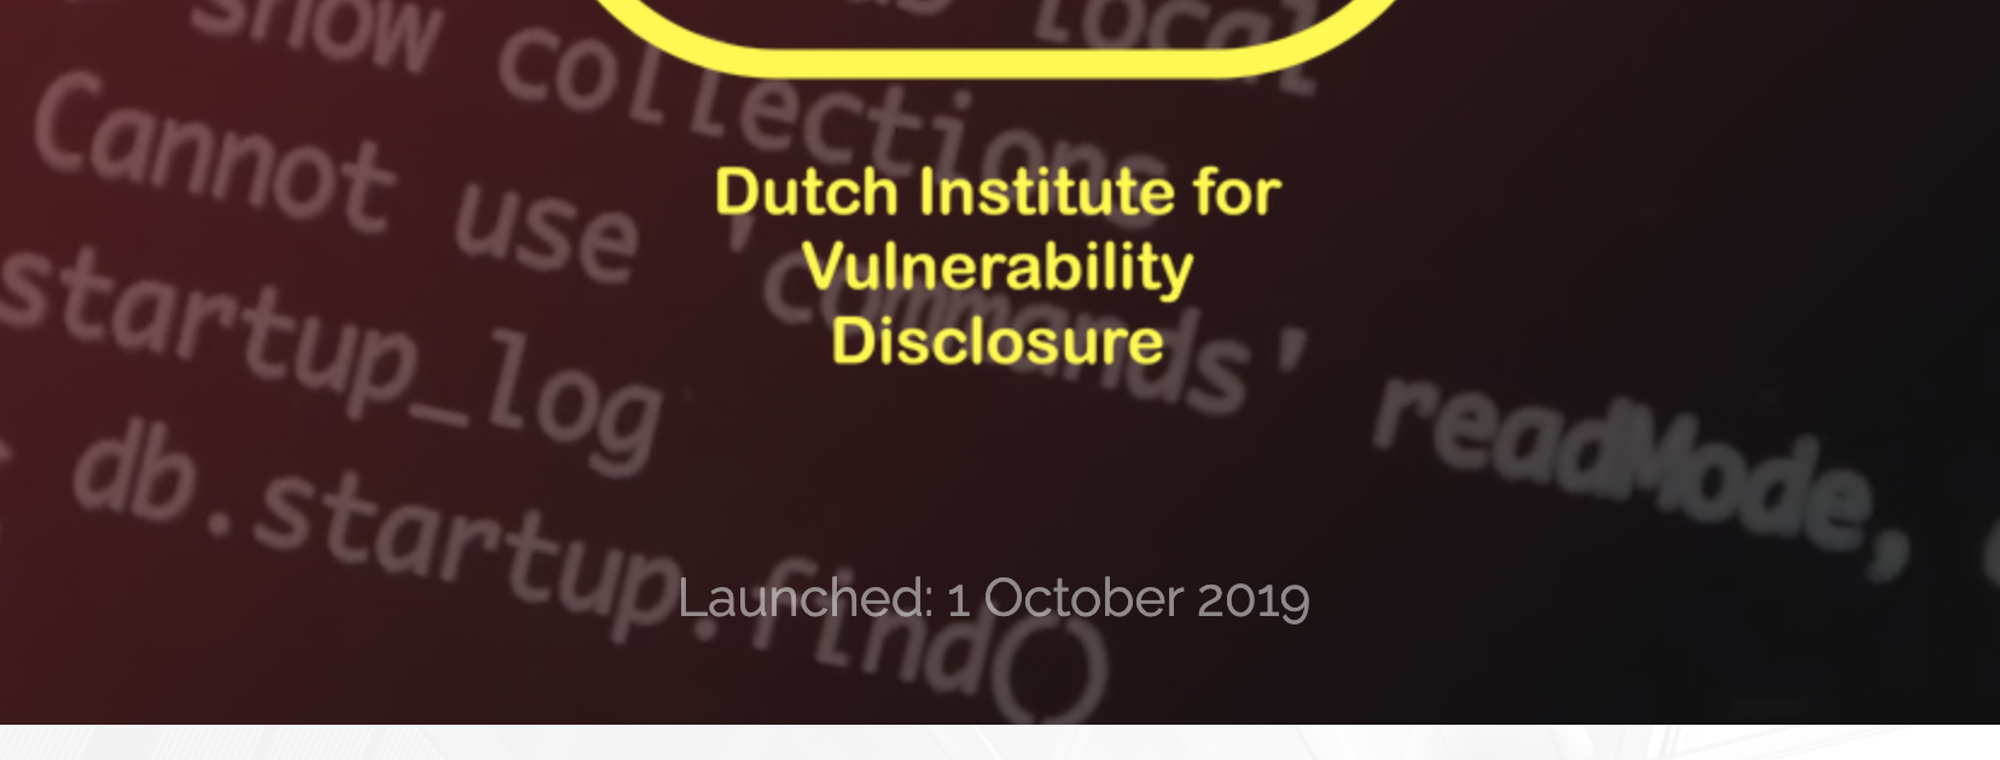 Dutch Institute for Vulnerability Disclosure-photo